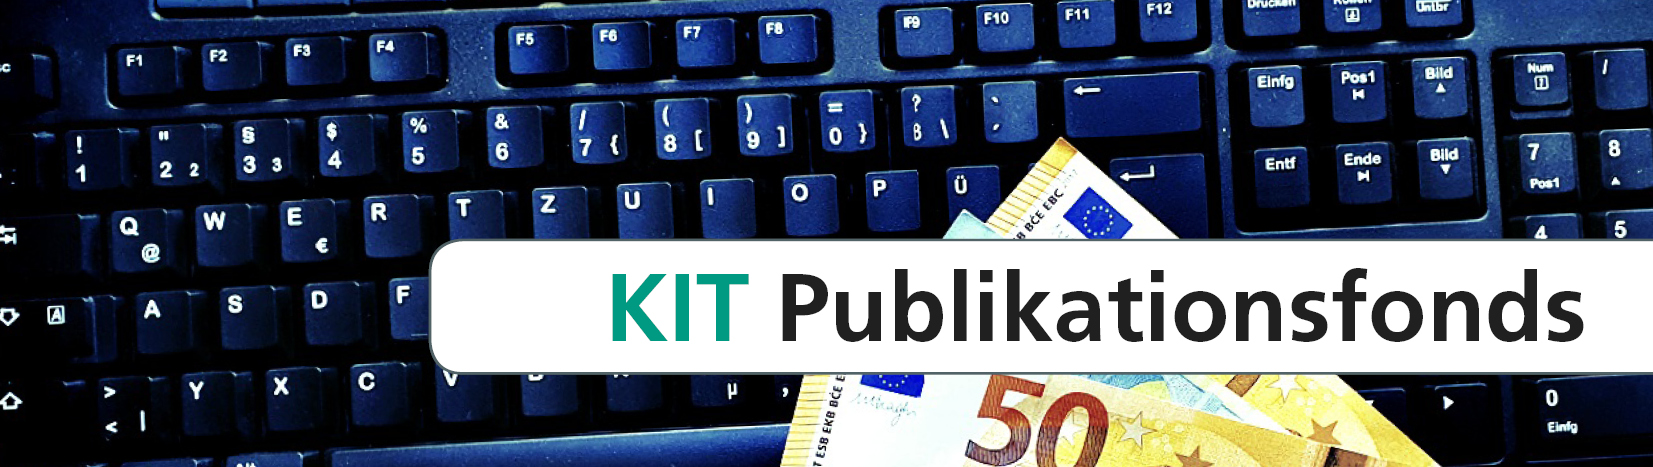 Kit Bibliothek Forschen Publizieren Publikationsfonds Kit Publikationsfonds